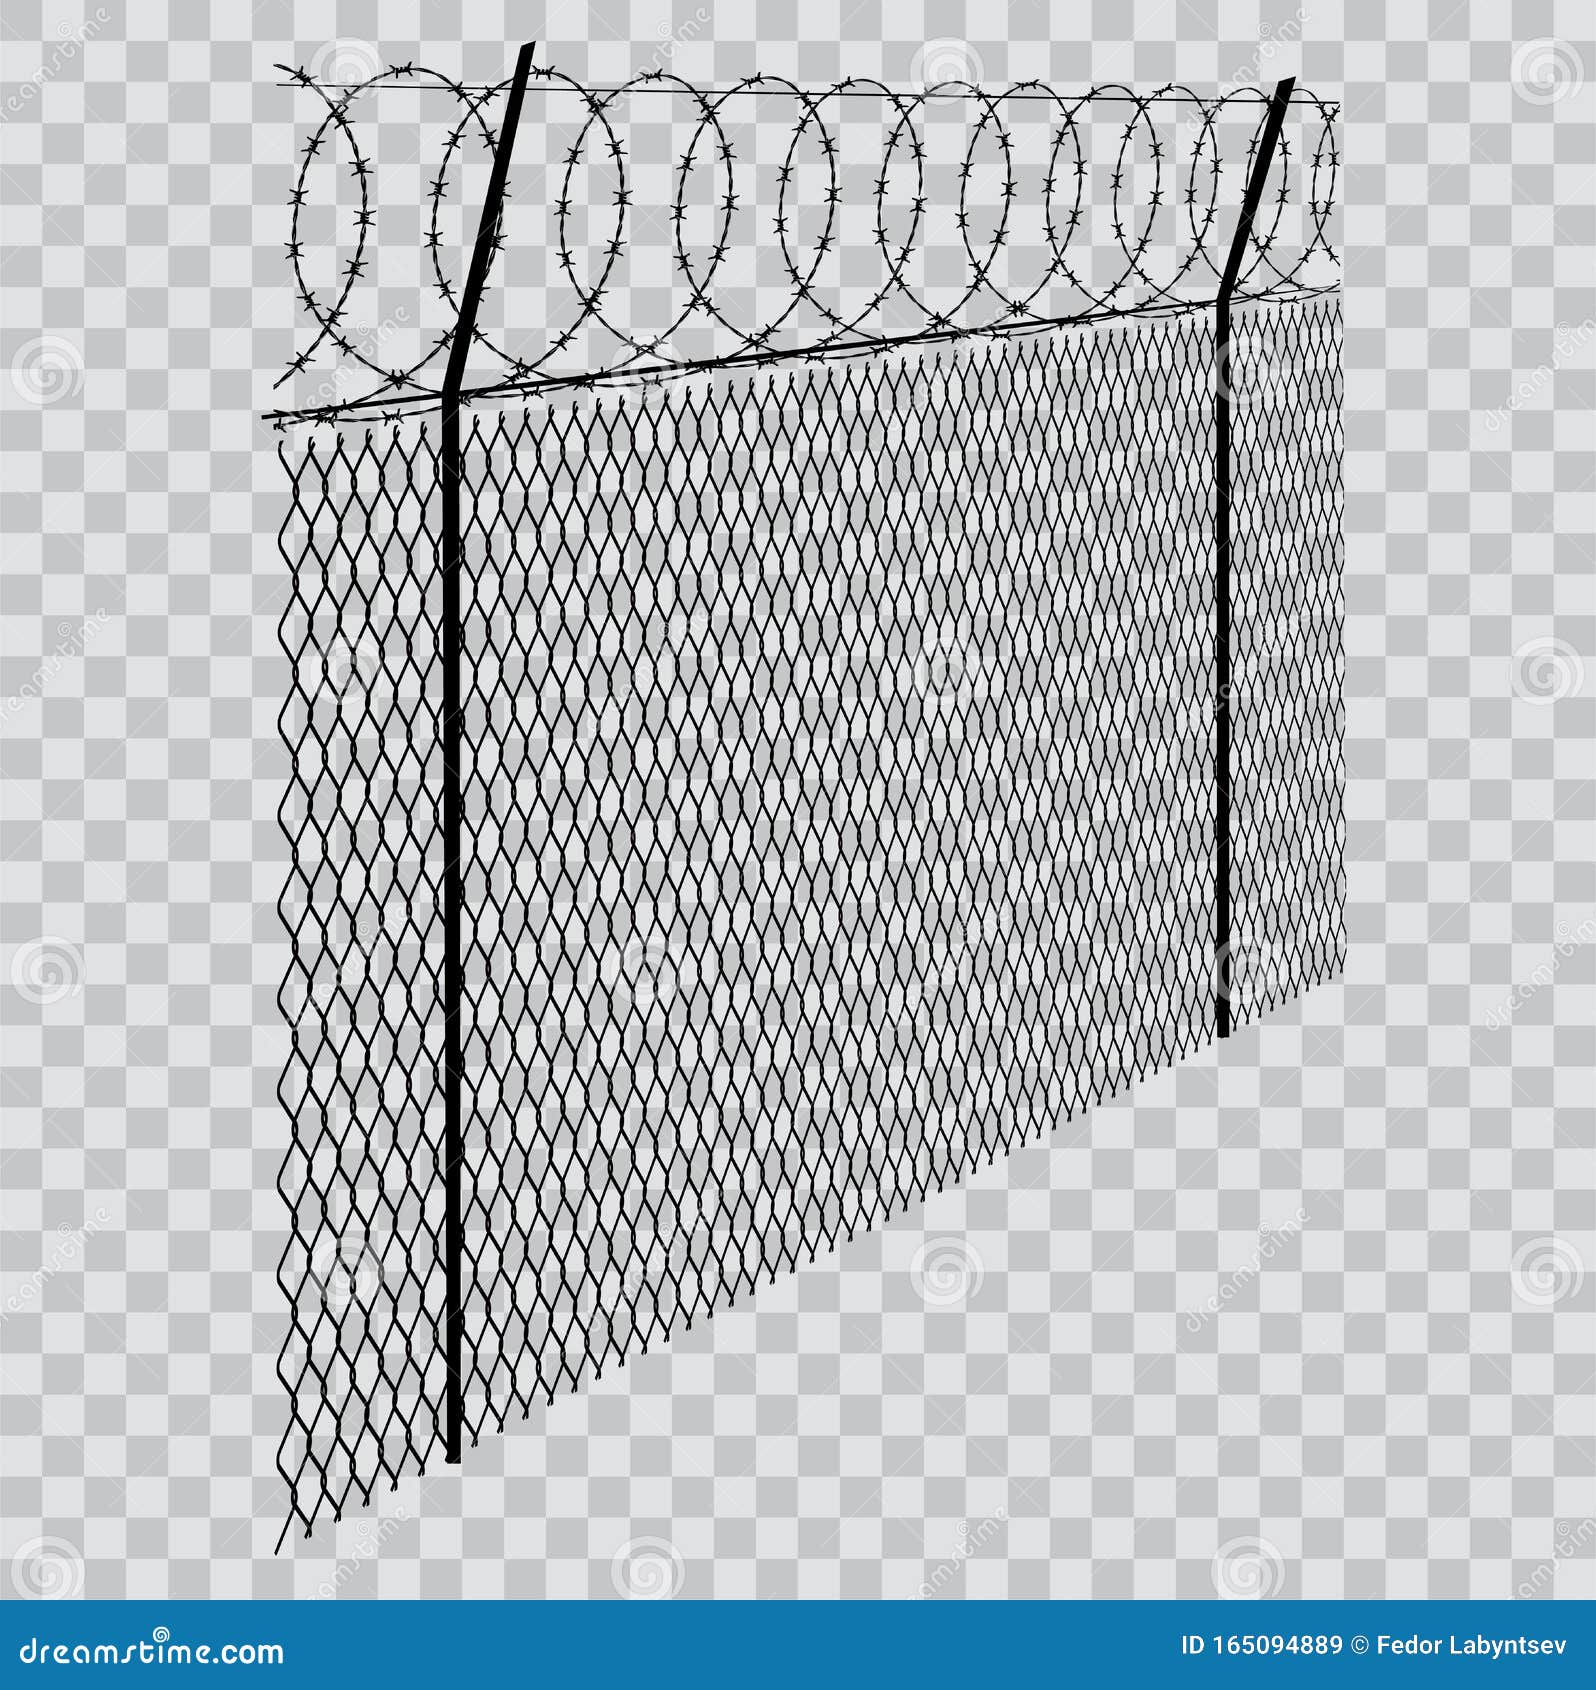 Забор из колючей проволоки рисунок